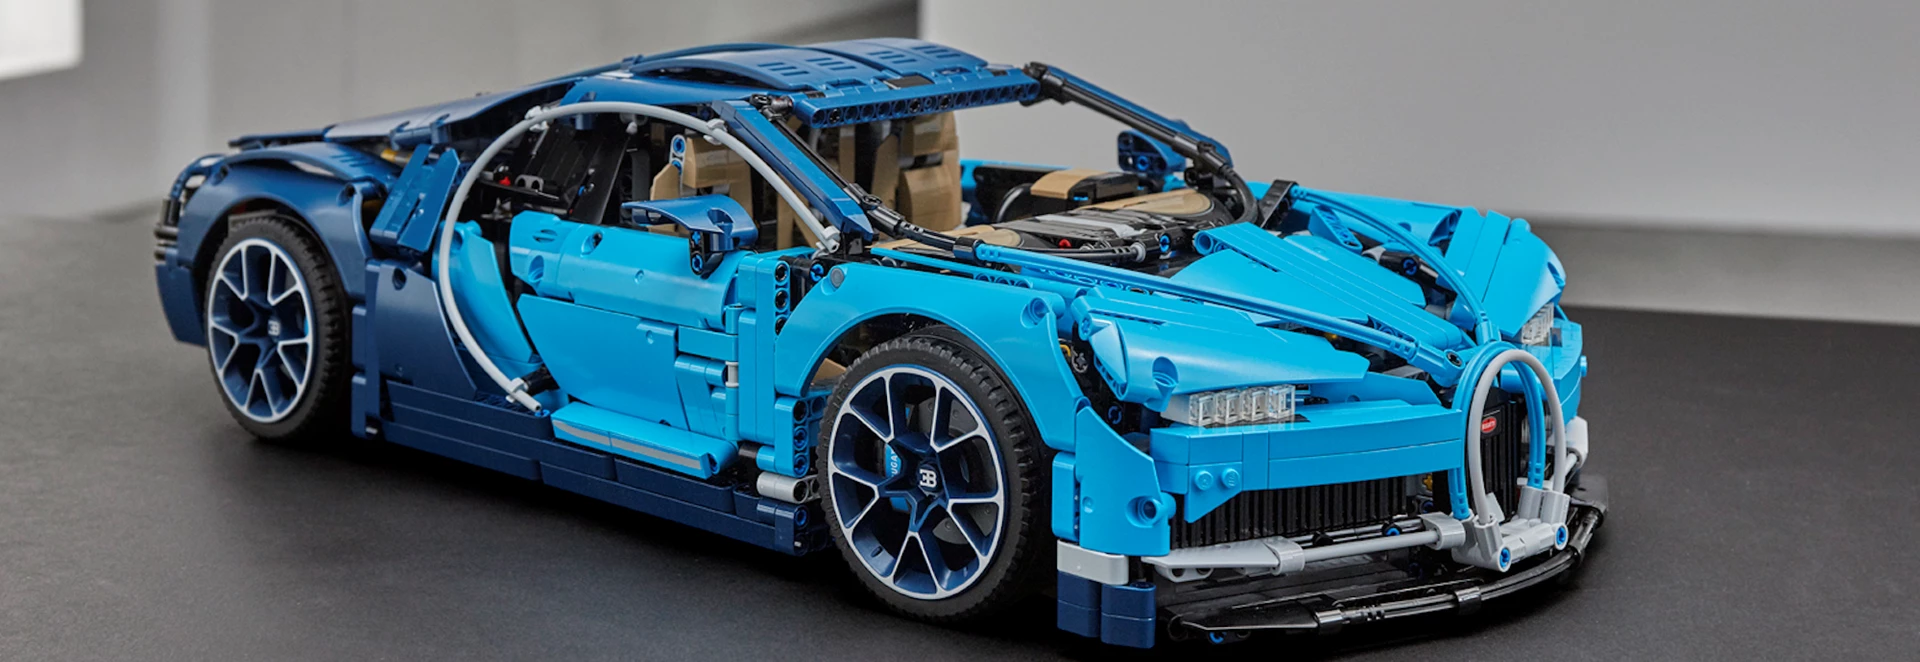 Bugatti unveils LEGO Technic Chiron model